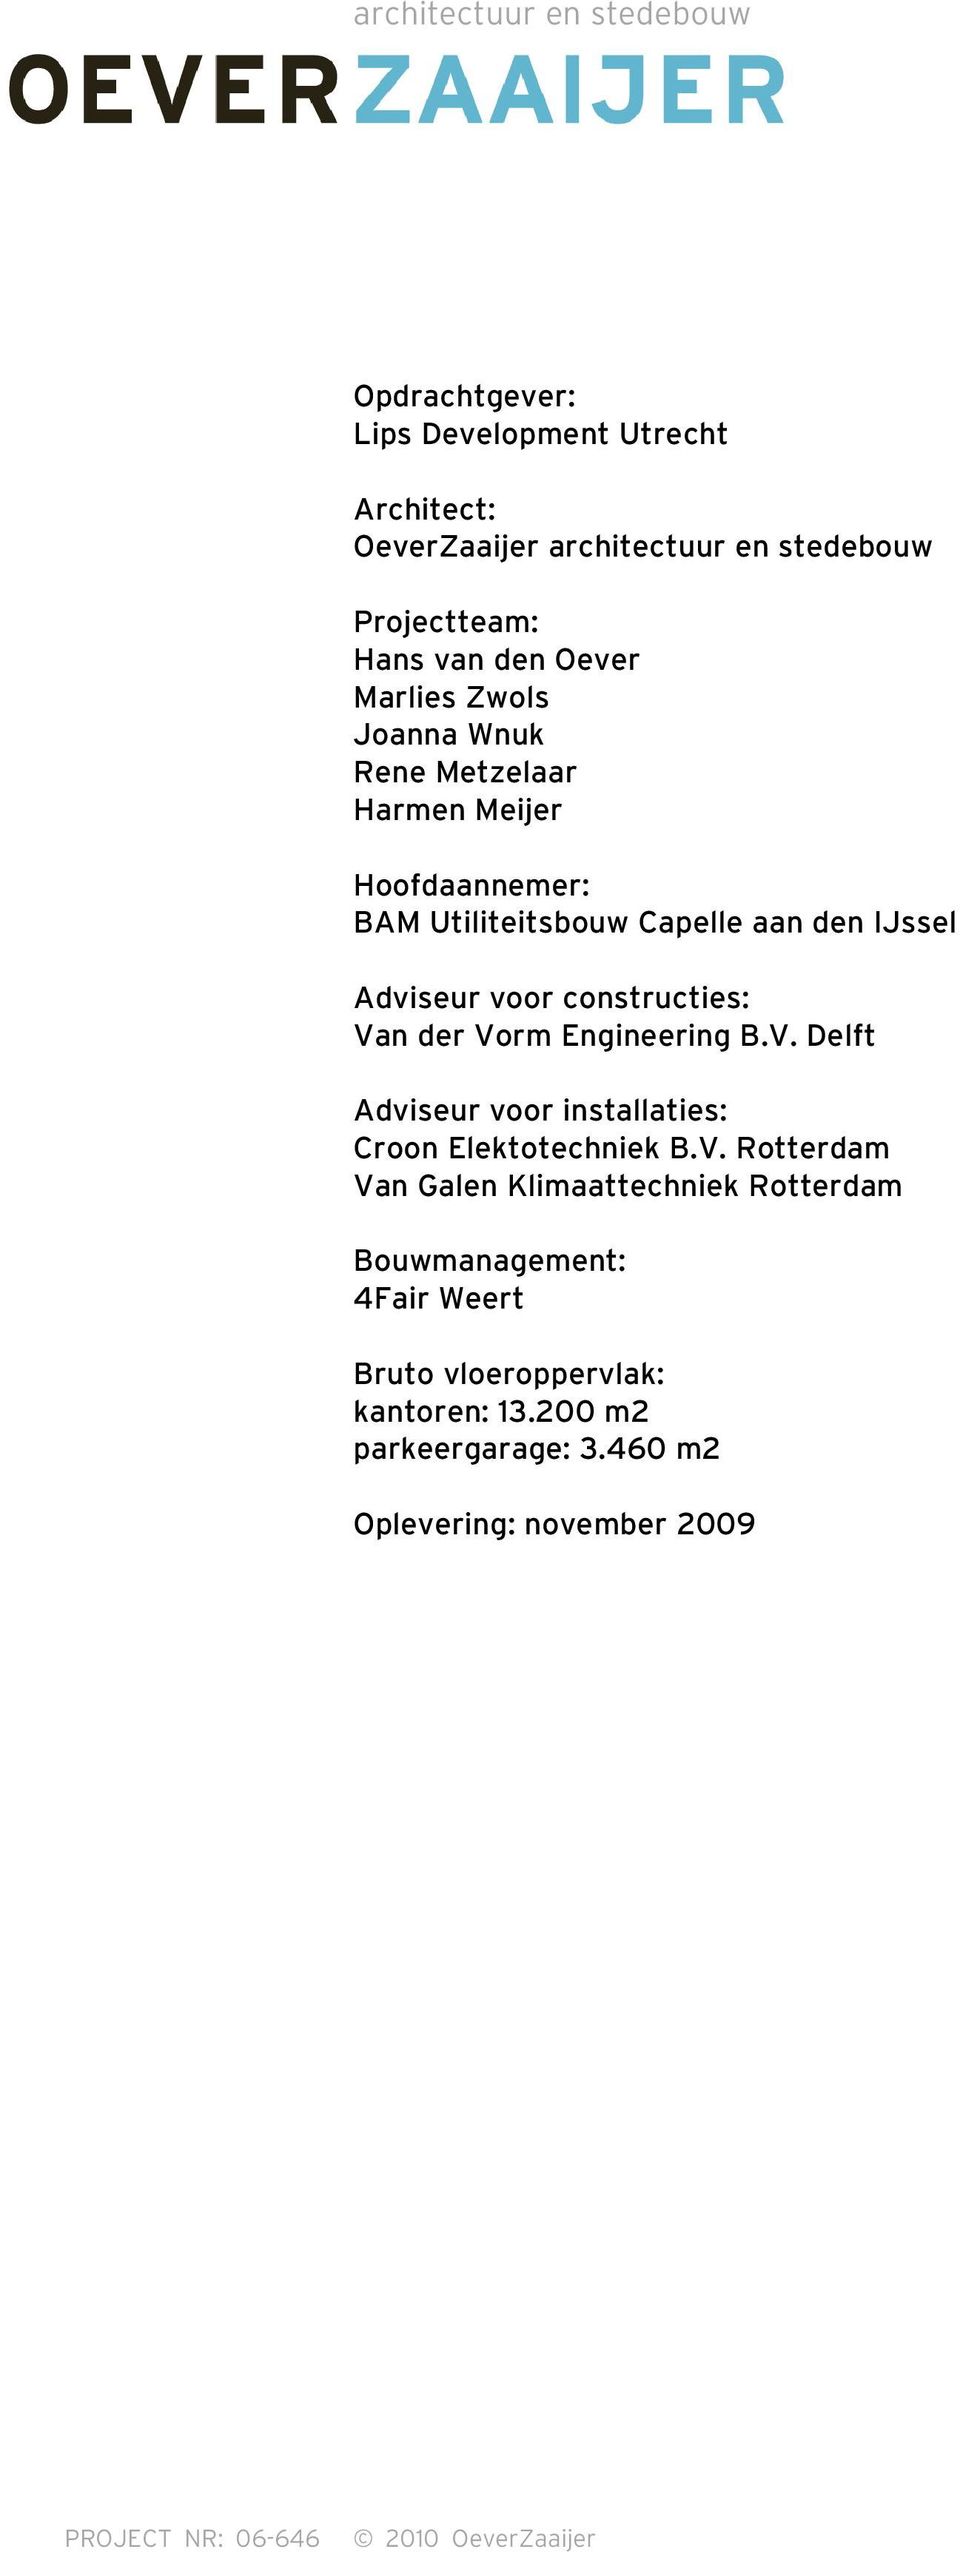 Vorm Engineering B.V. Delft Adviseur voor installaties: Croon Elektotechniek B.V. Rotterdam Van Galen Klimaattechniek Rotterdam Bouwmanagement: 4Fair Weert Bruto vloeroppervlak: kantoren: 13.